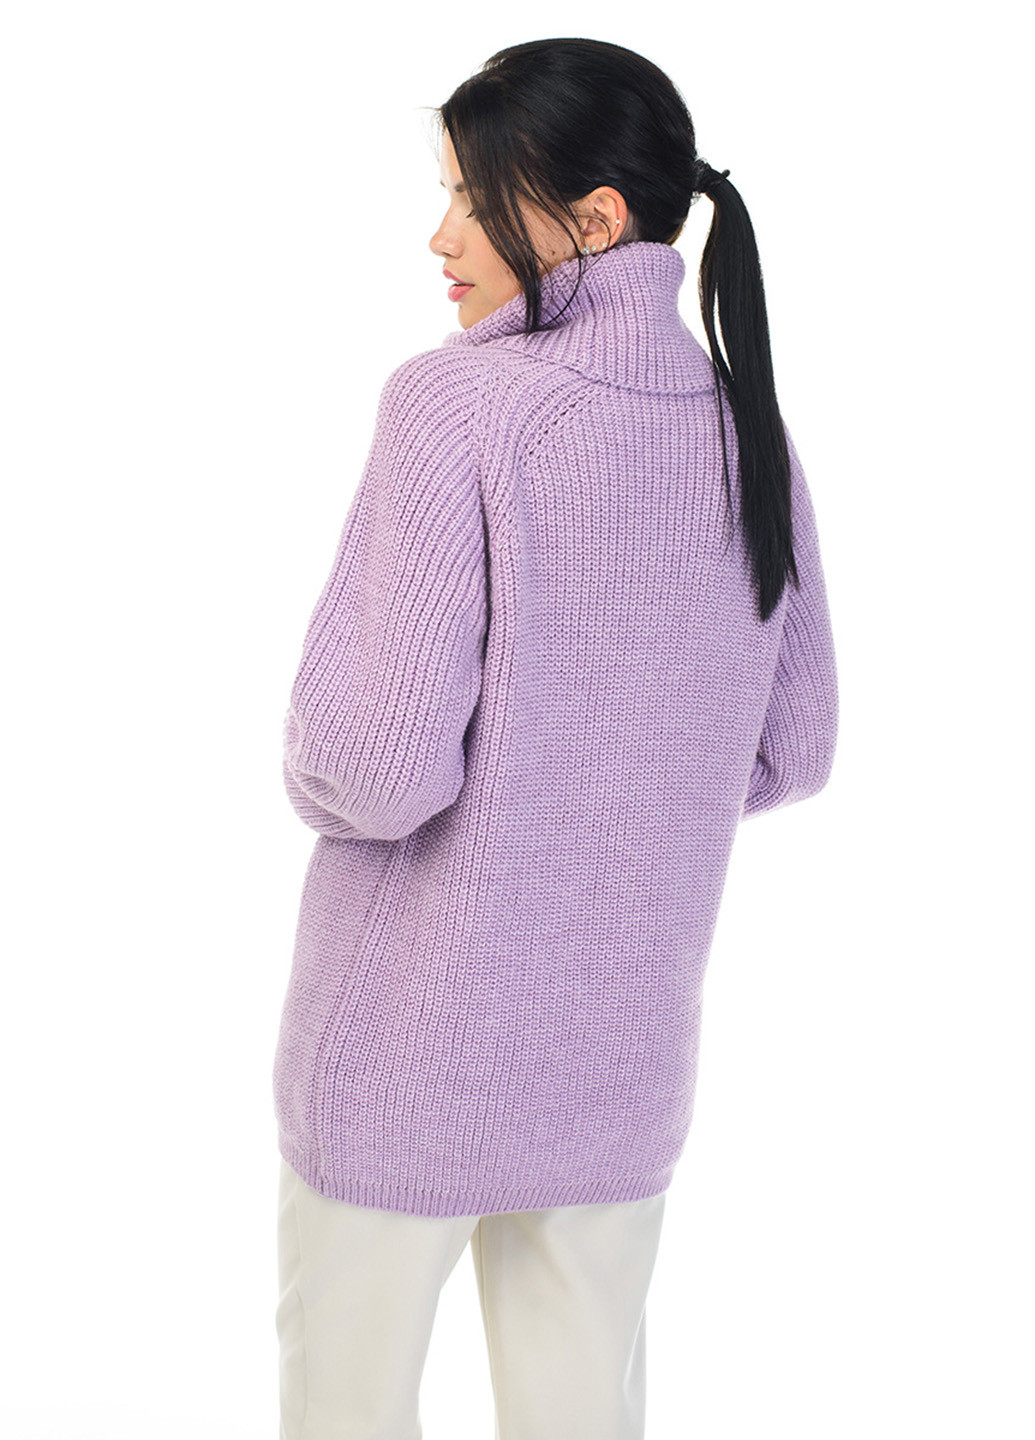 Сиреневый теплый свитер крупной вязки светлая пудра SVTR